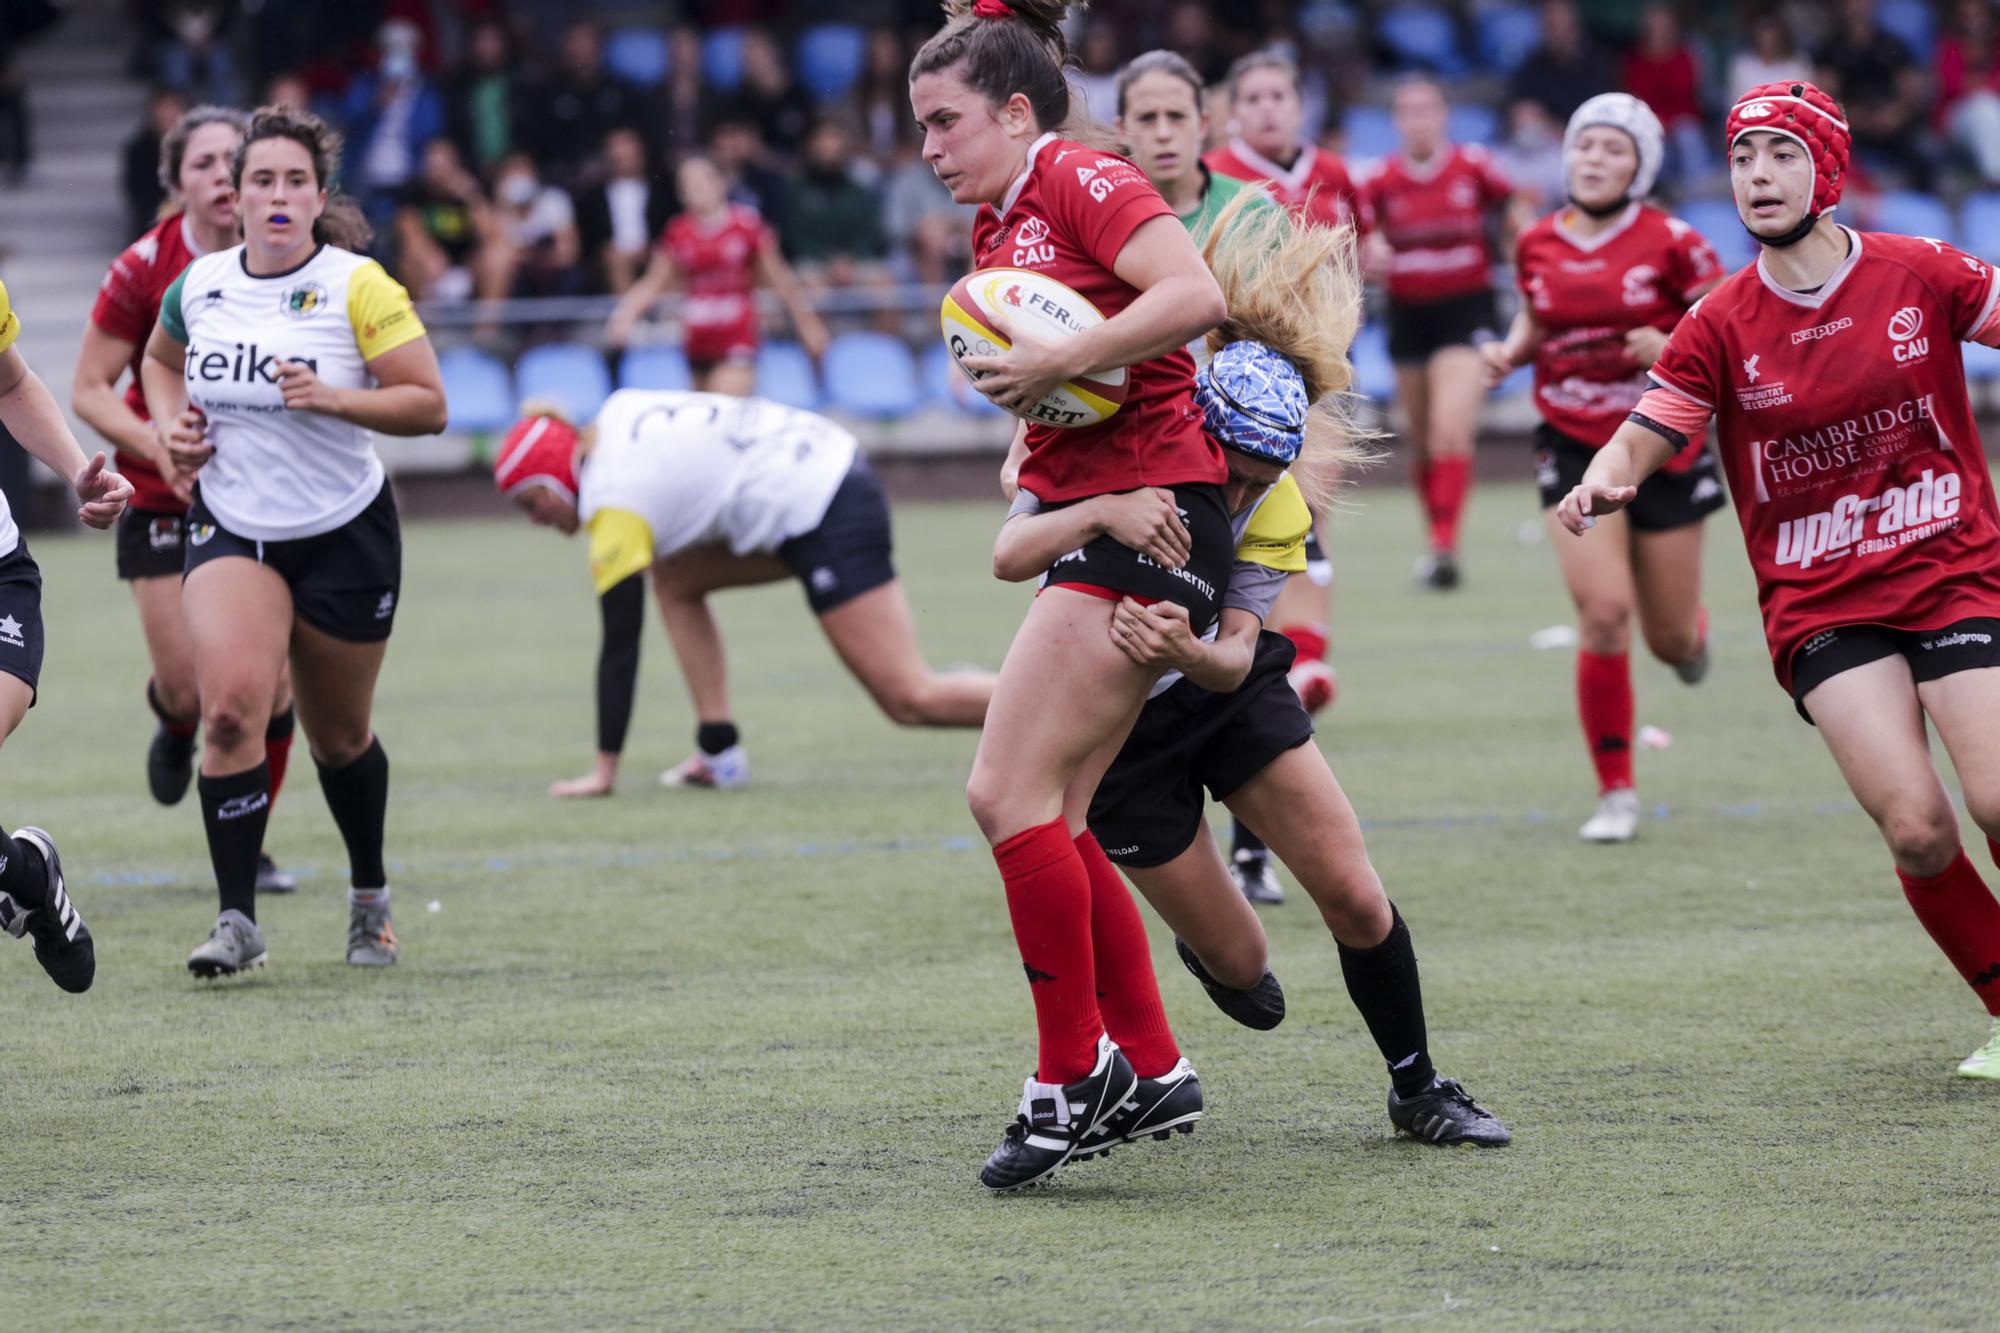 Victoria del Rugby Turia ante CAU Valencia en División de Honor B femenina  de rugby - Superdeporte